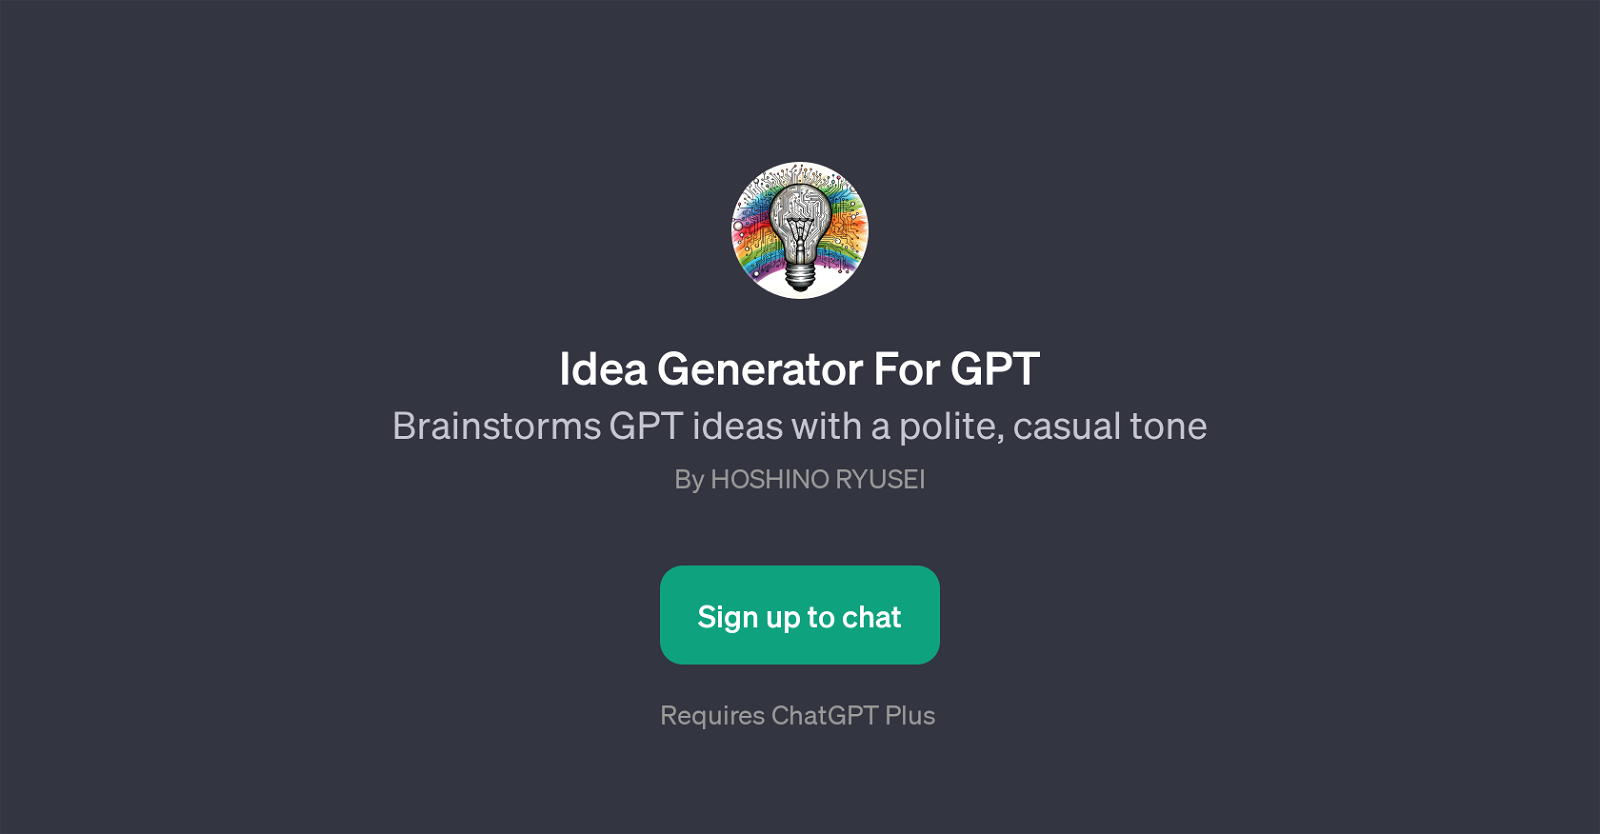 Idea Generator For GPT website